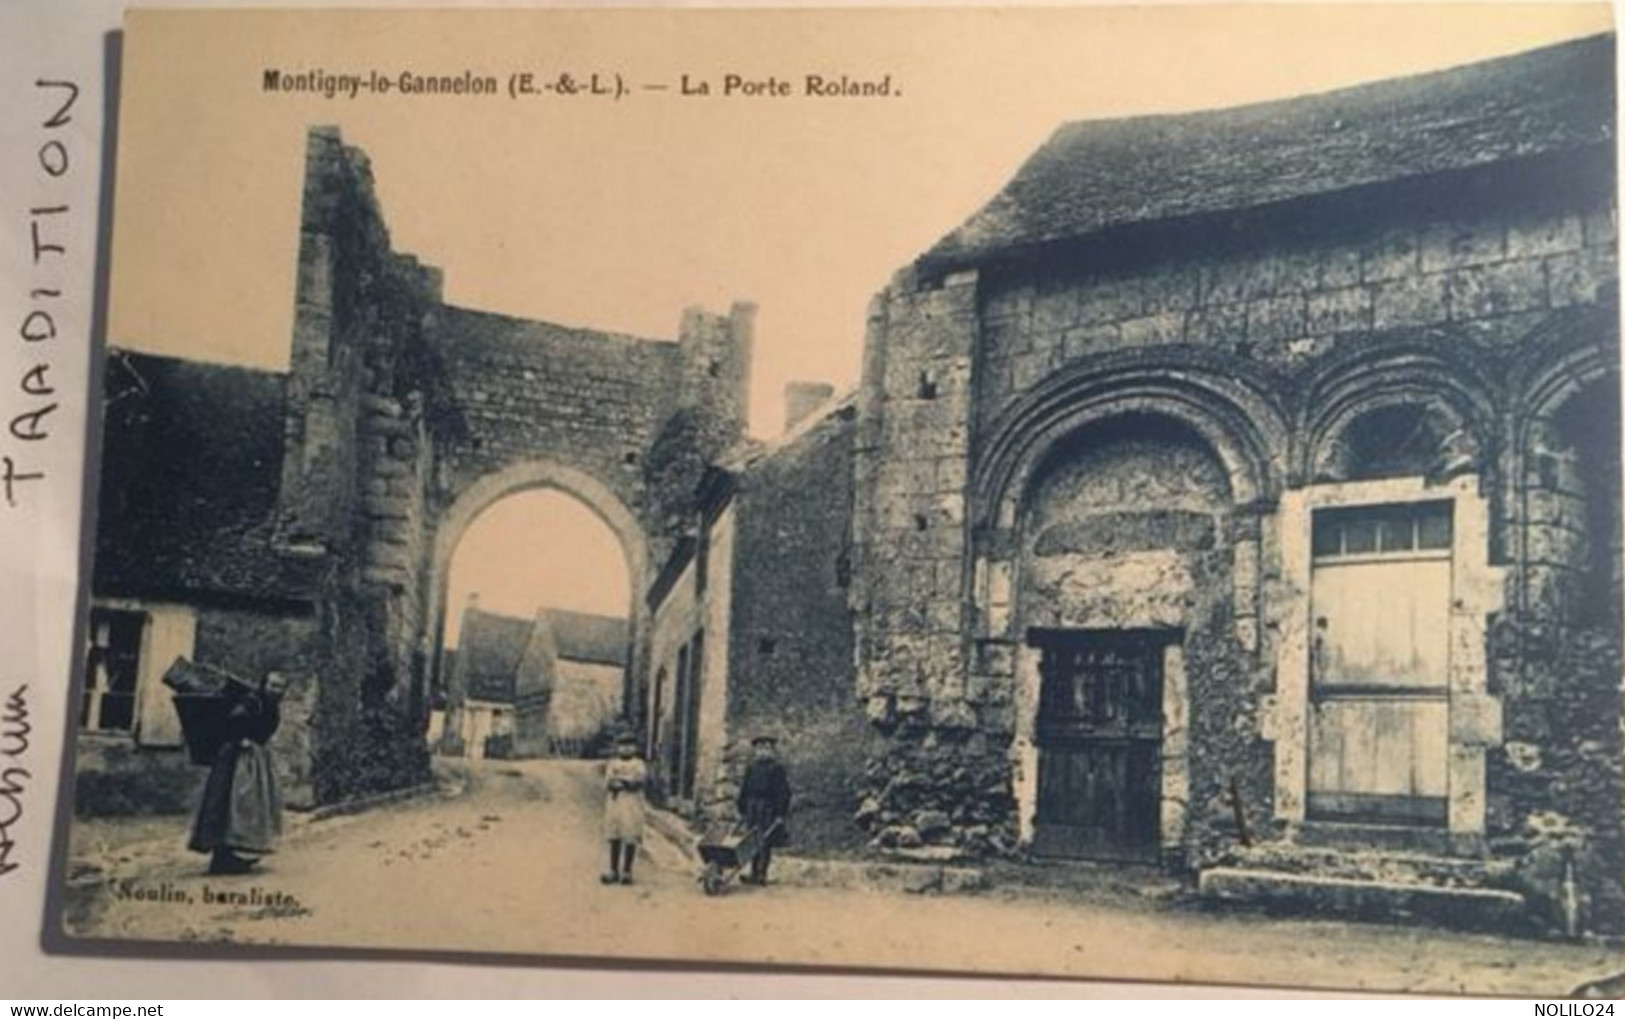 Cpa, écrite De St Hilaire En 1933, 28 MONTIGNY Le GANNELON La Porte Roland, éd Noulin Buraliste - Montigny-le-Gannelon